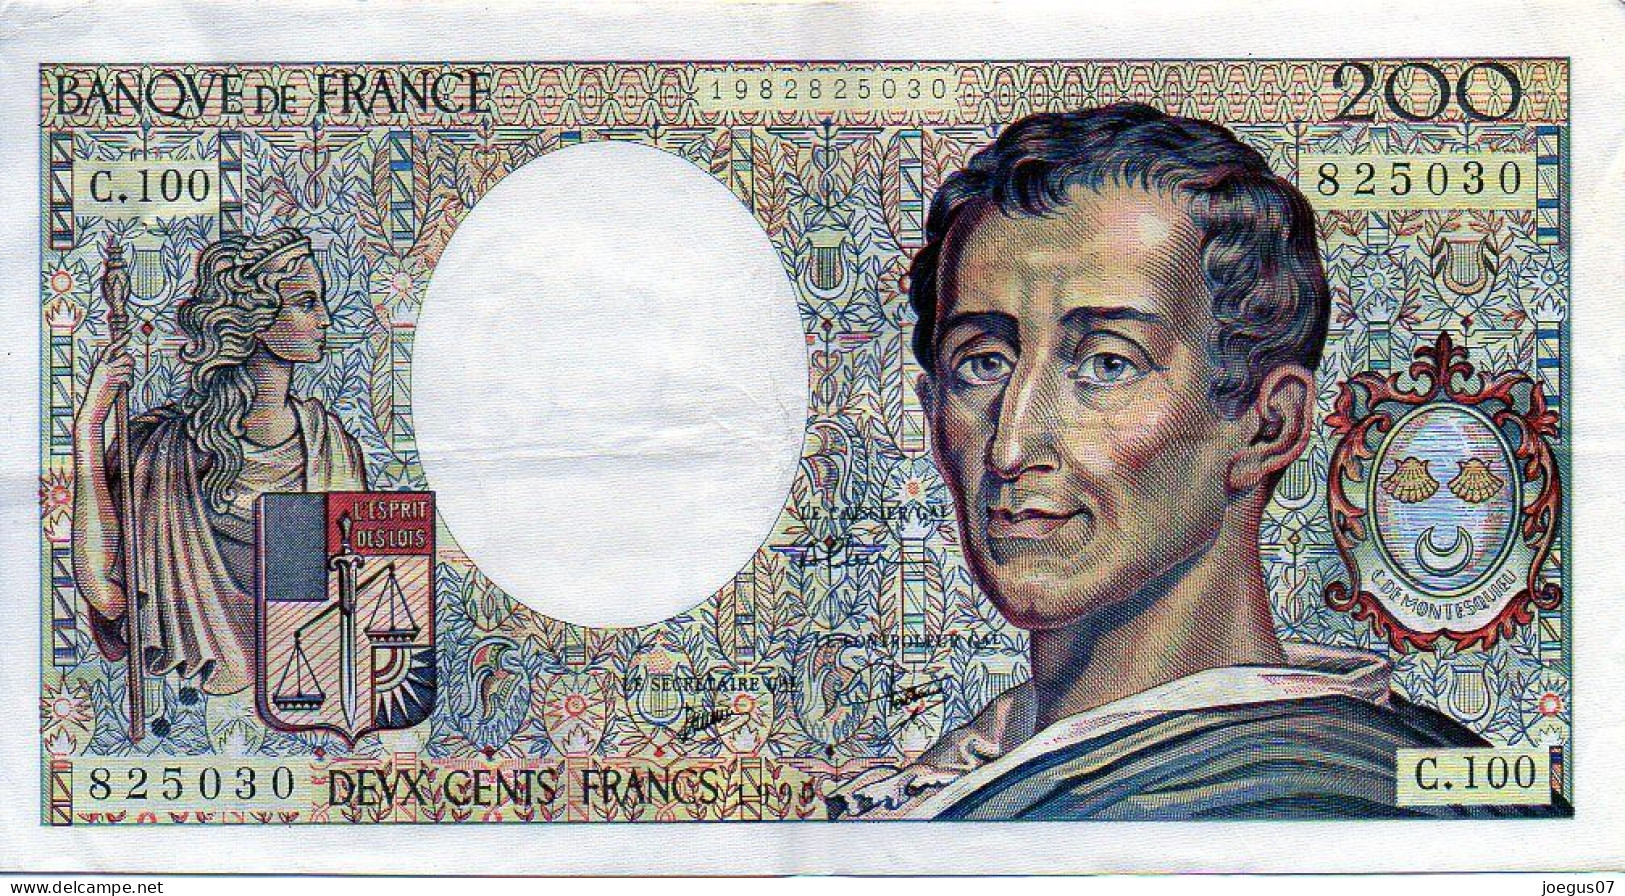 Billet 200 F Deux Cents Francs Montesquieu, Circulé. Banque De France, Année 1990 - C. 100 - 825030 - 1982825030 - 200 F 1981-1994 ''Montesquieu''